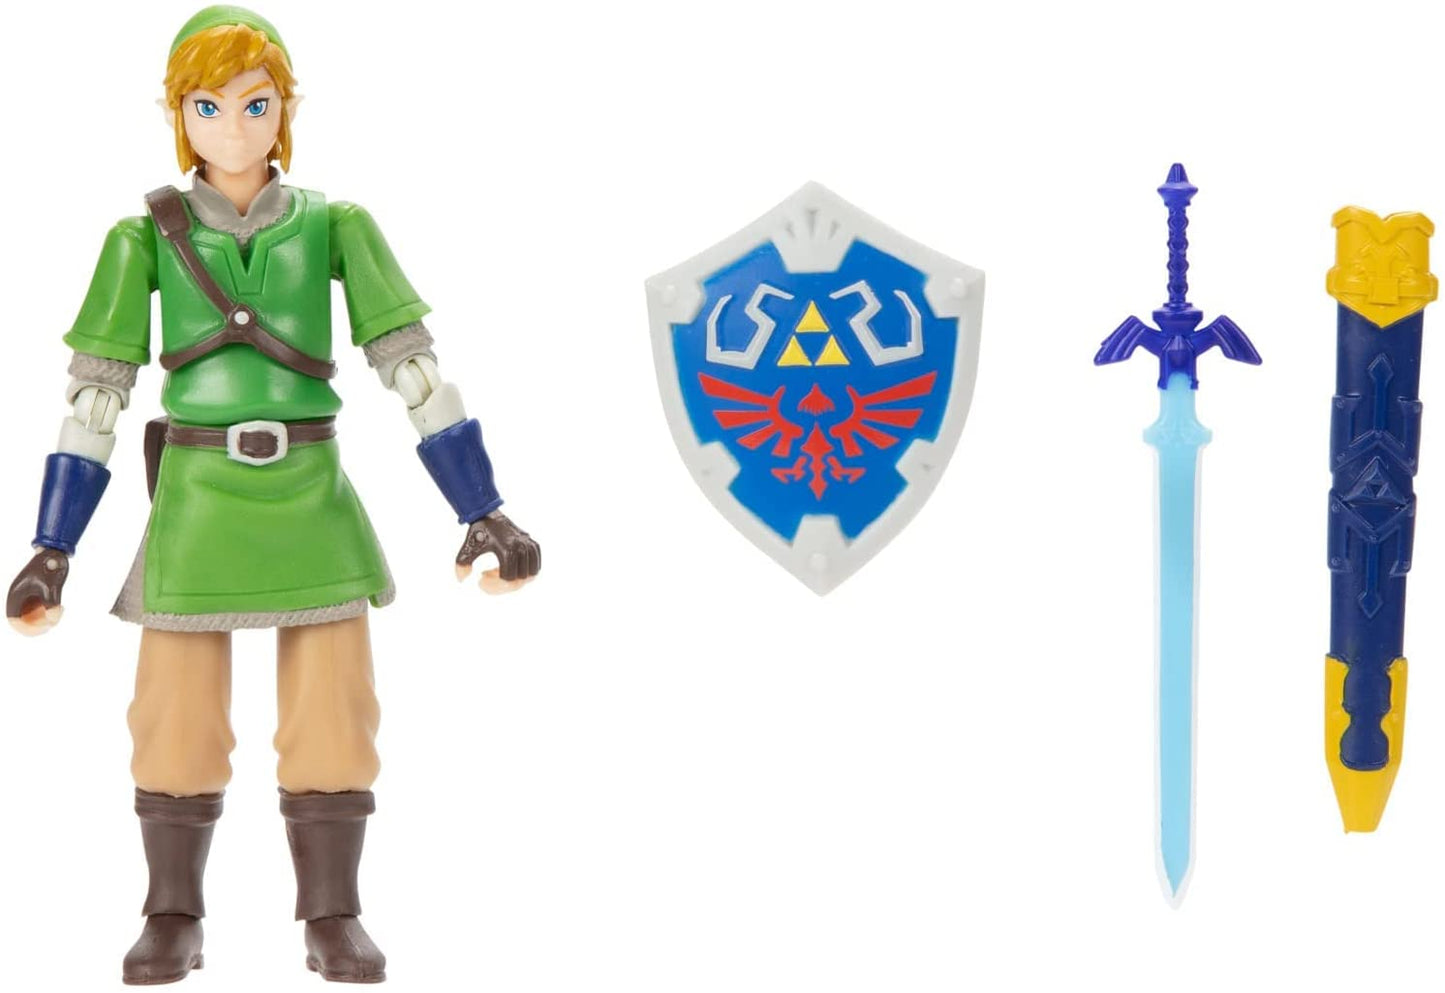 Nintendo the Legend of Zelda Skyward Sword Link 4 Inch Action Figure